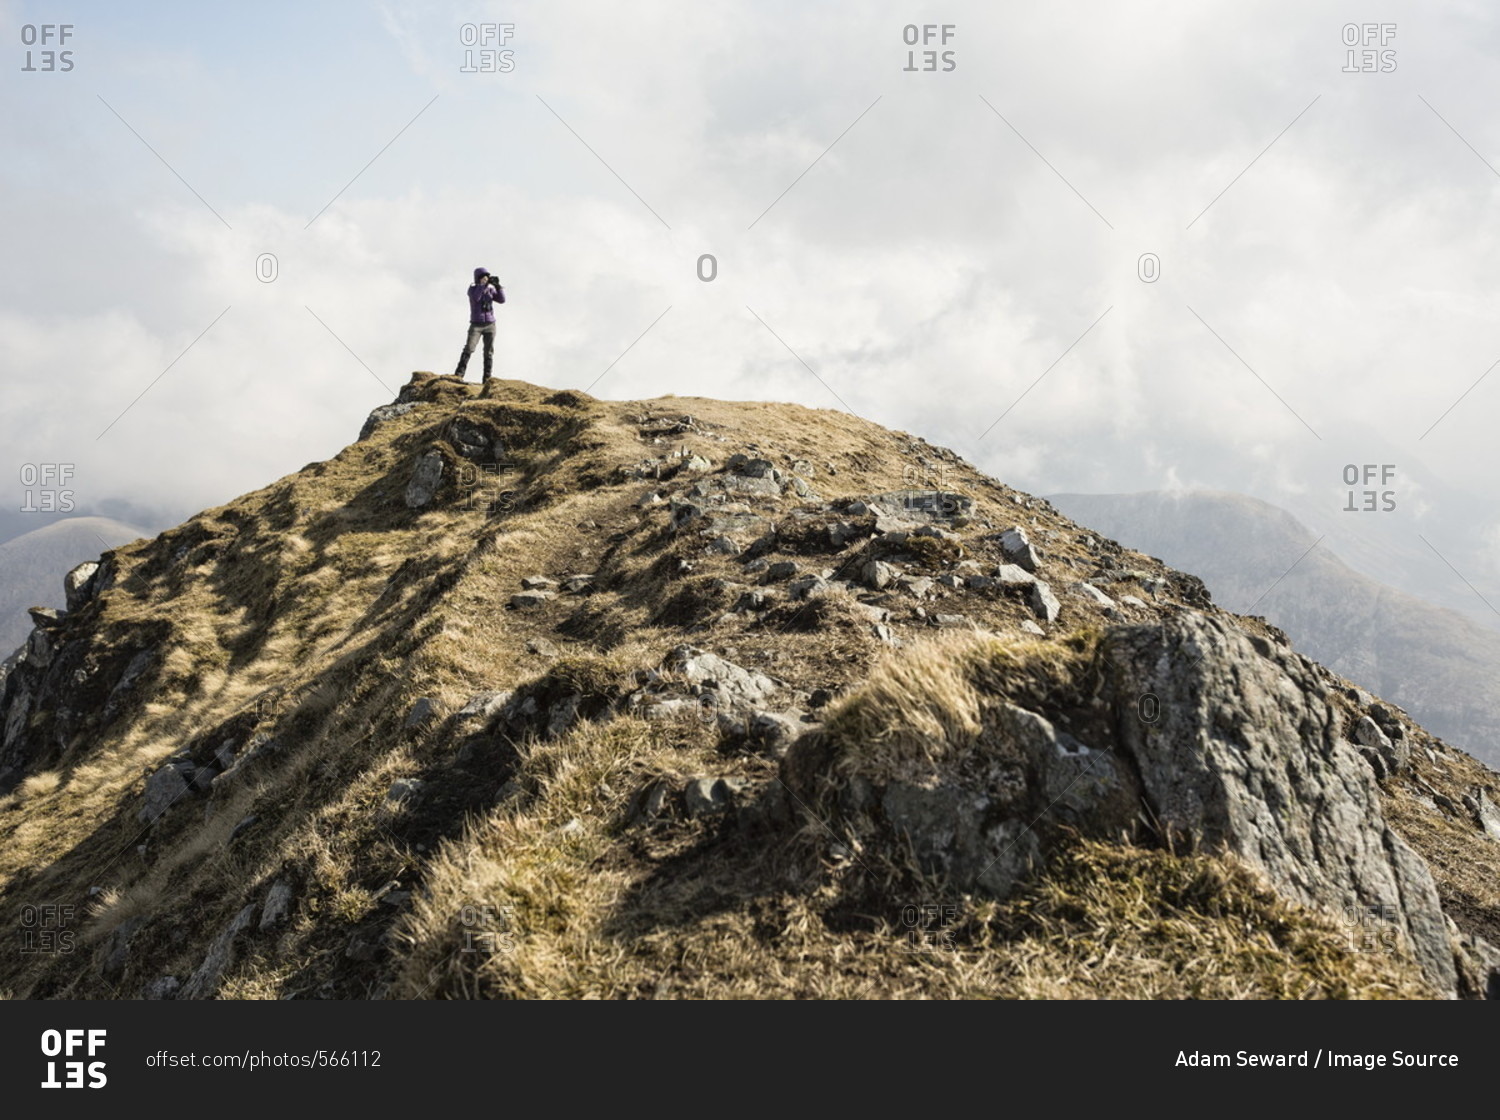 Woman on top of Marsco, Glen Sligachan, Isle of Skye, Scotland